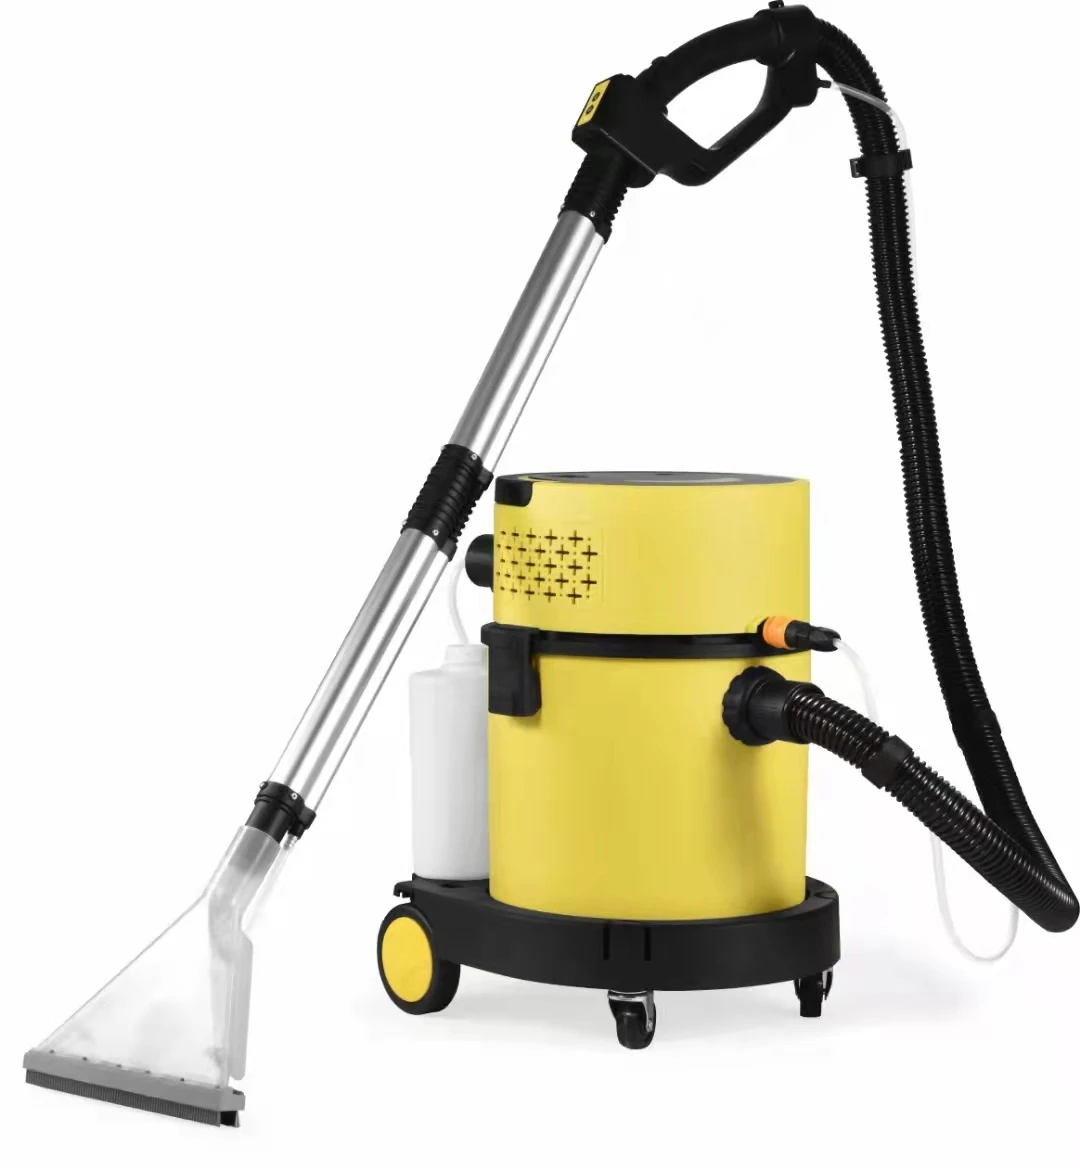 BOPAI 2022 high inquiries washing carpet and car seat shampoo vacuum cleaner (1600525861022)